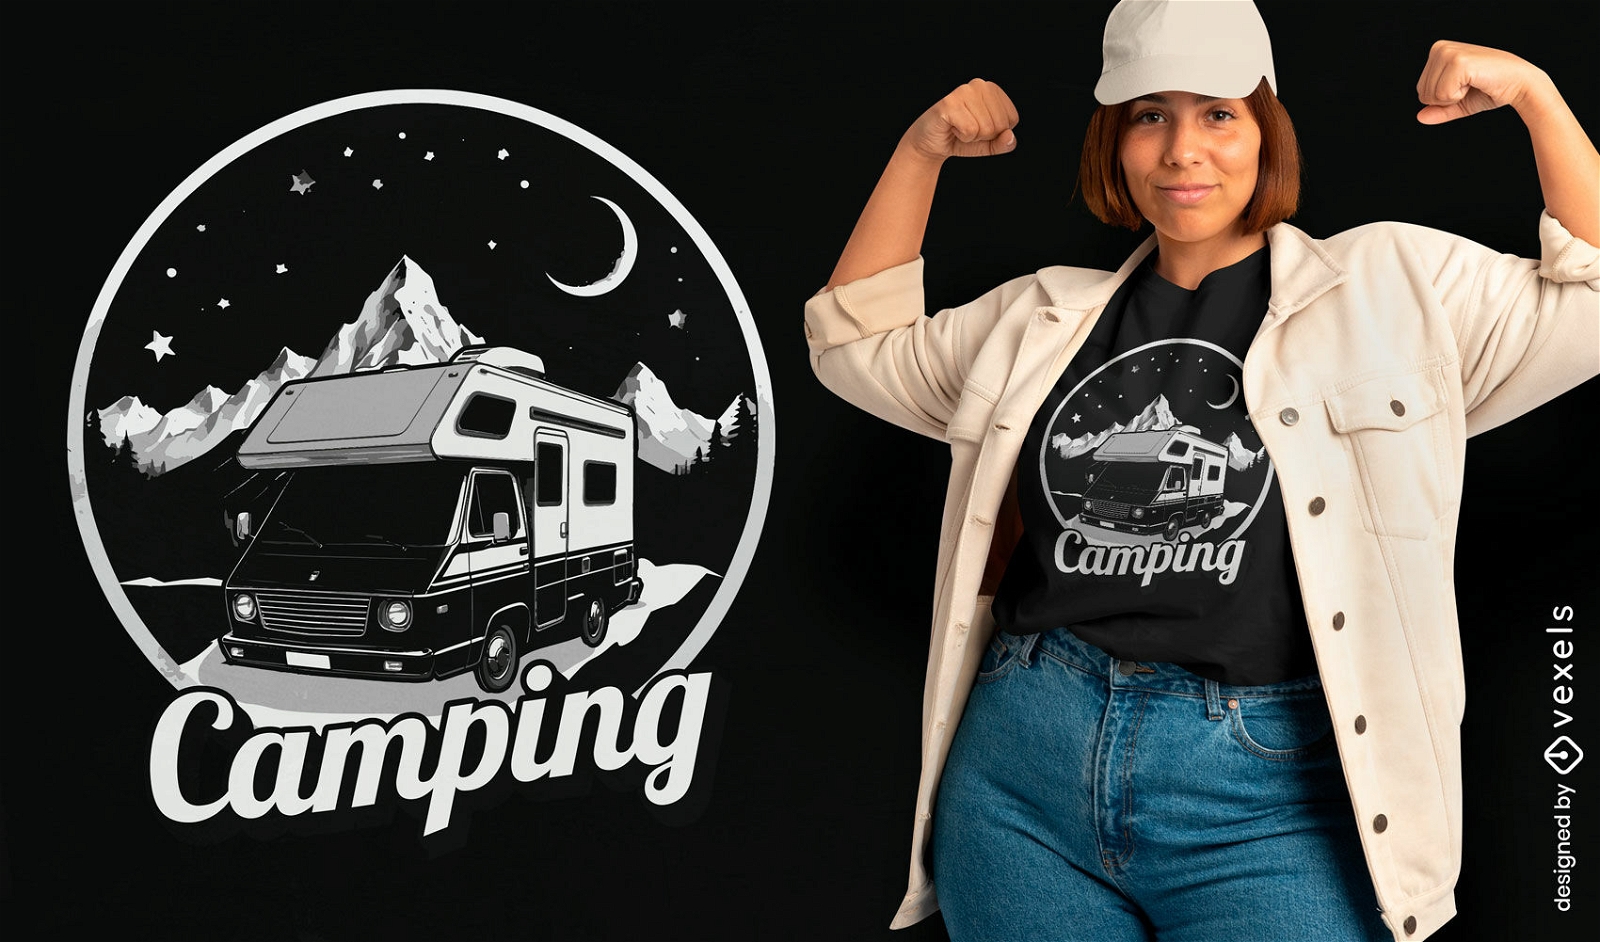 Dise?o de camiseta de camping en furgoneta monocrom?tica.